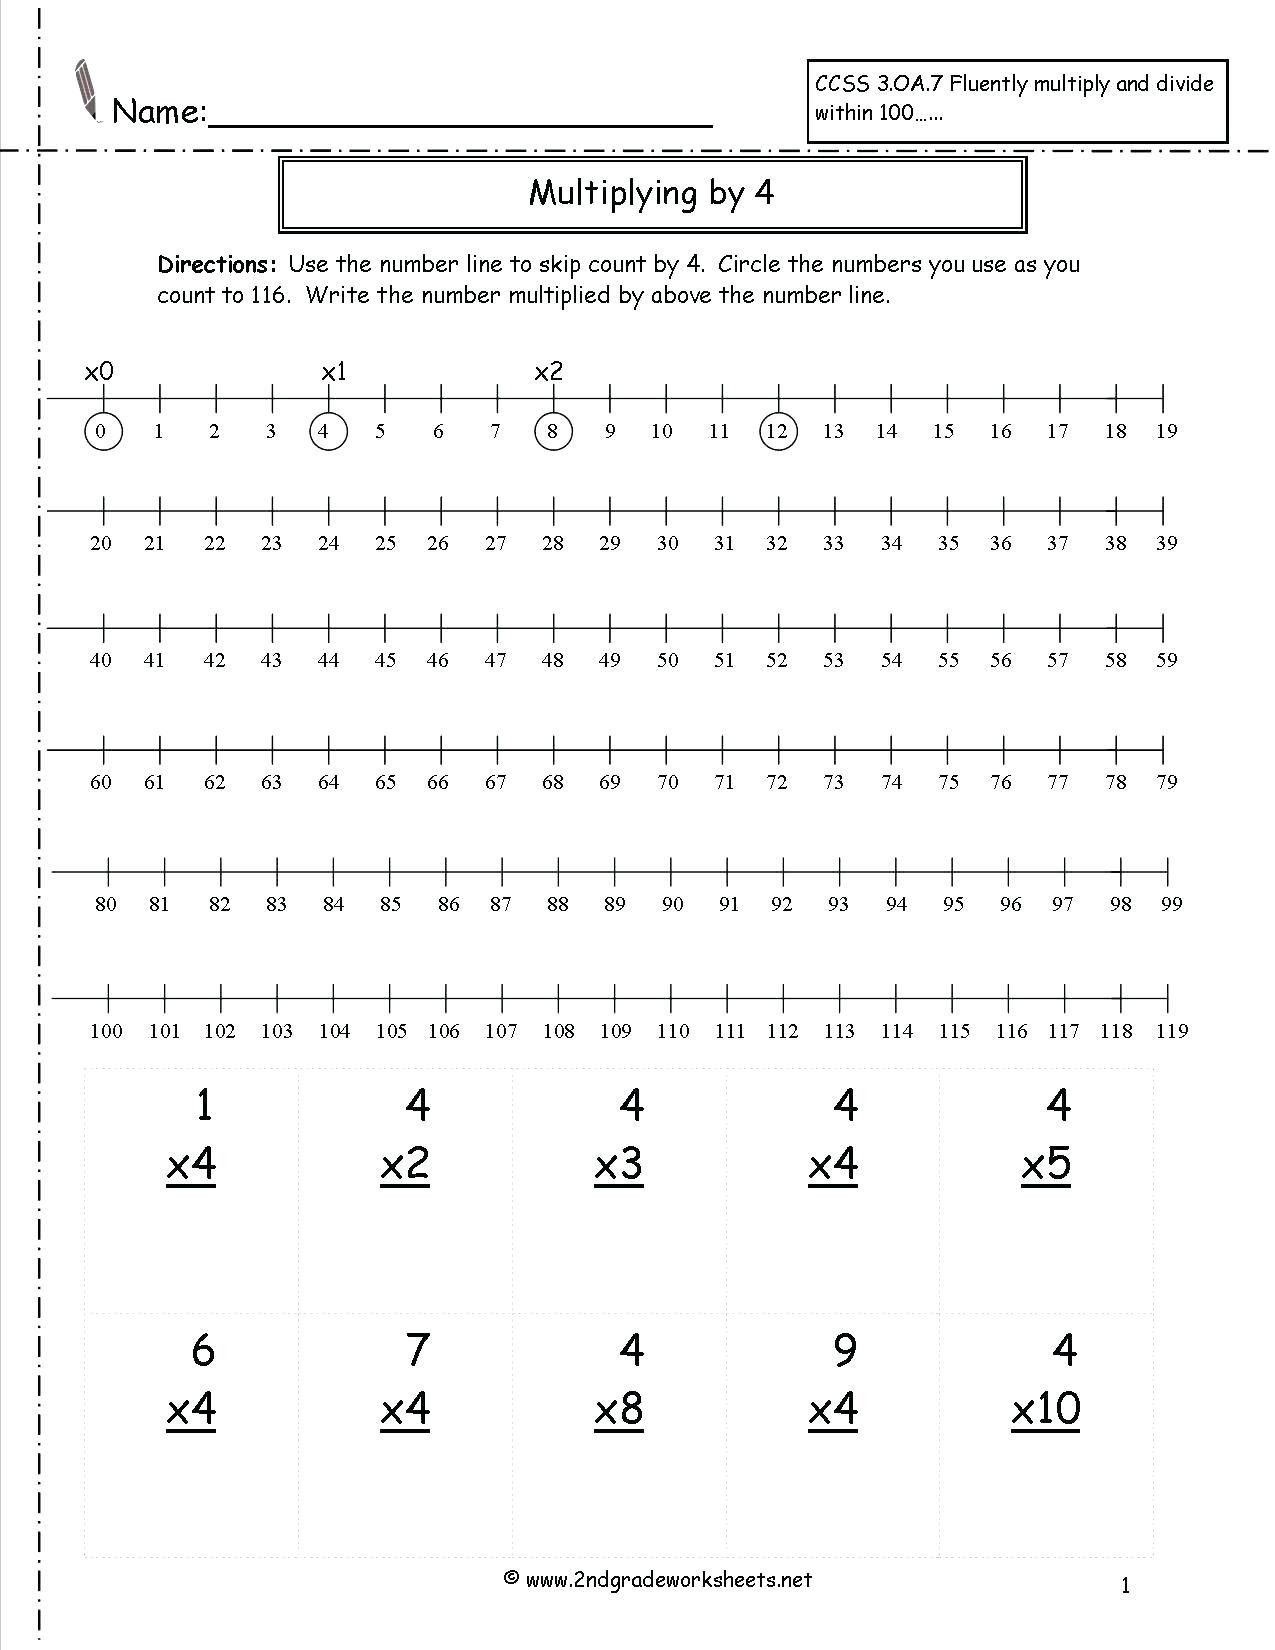 Second Grade Number Line Worksheets 4 Reading Prehension Worksheets Second Grade 2 with